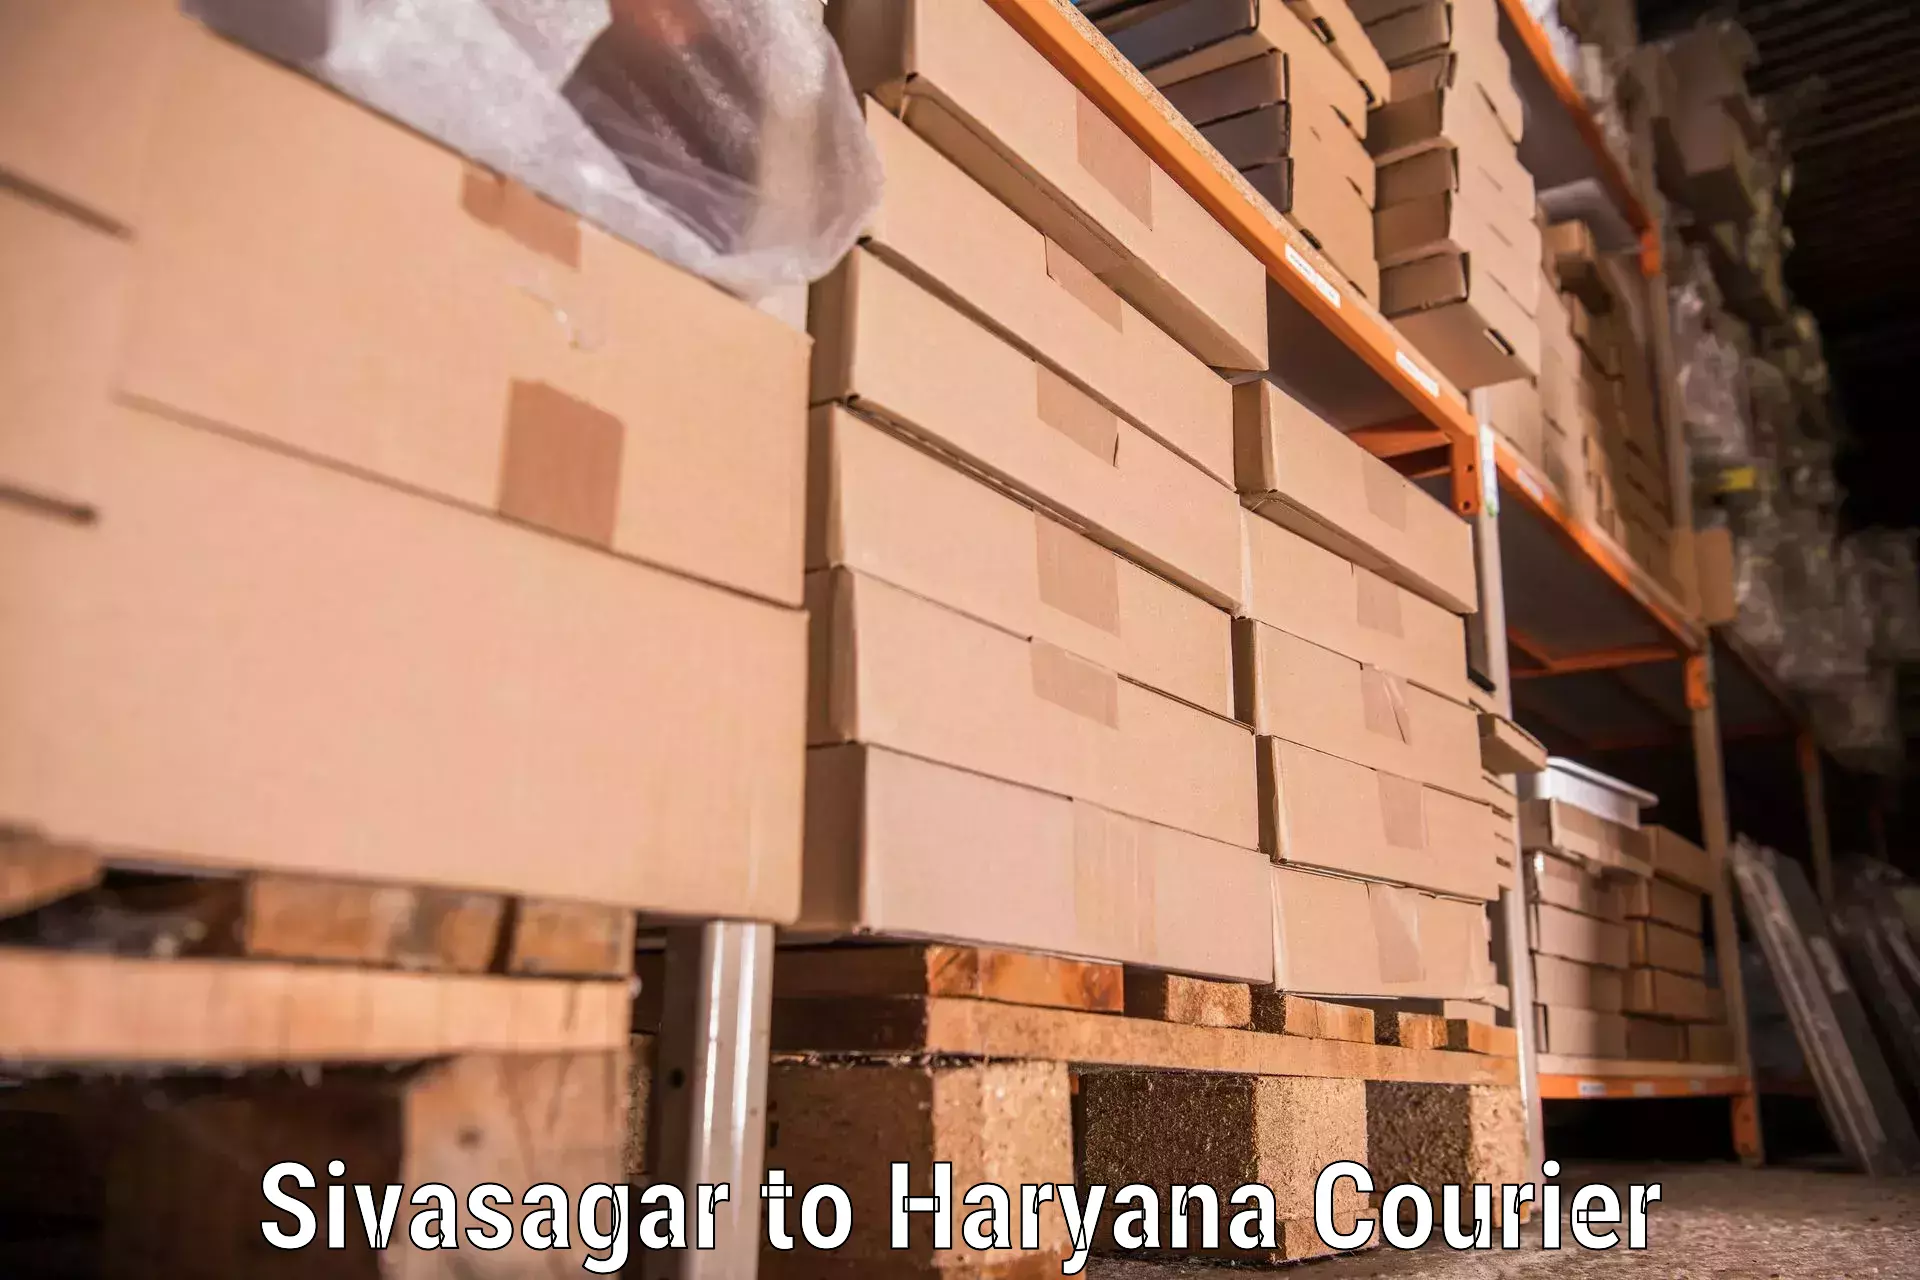 Moving and packing experts Sivasagar to Palwal